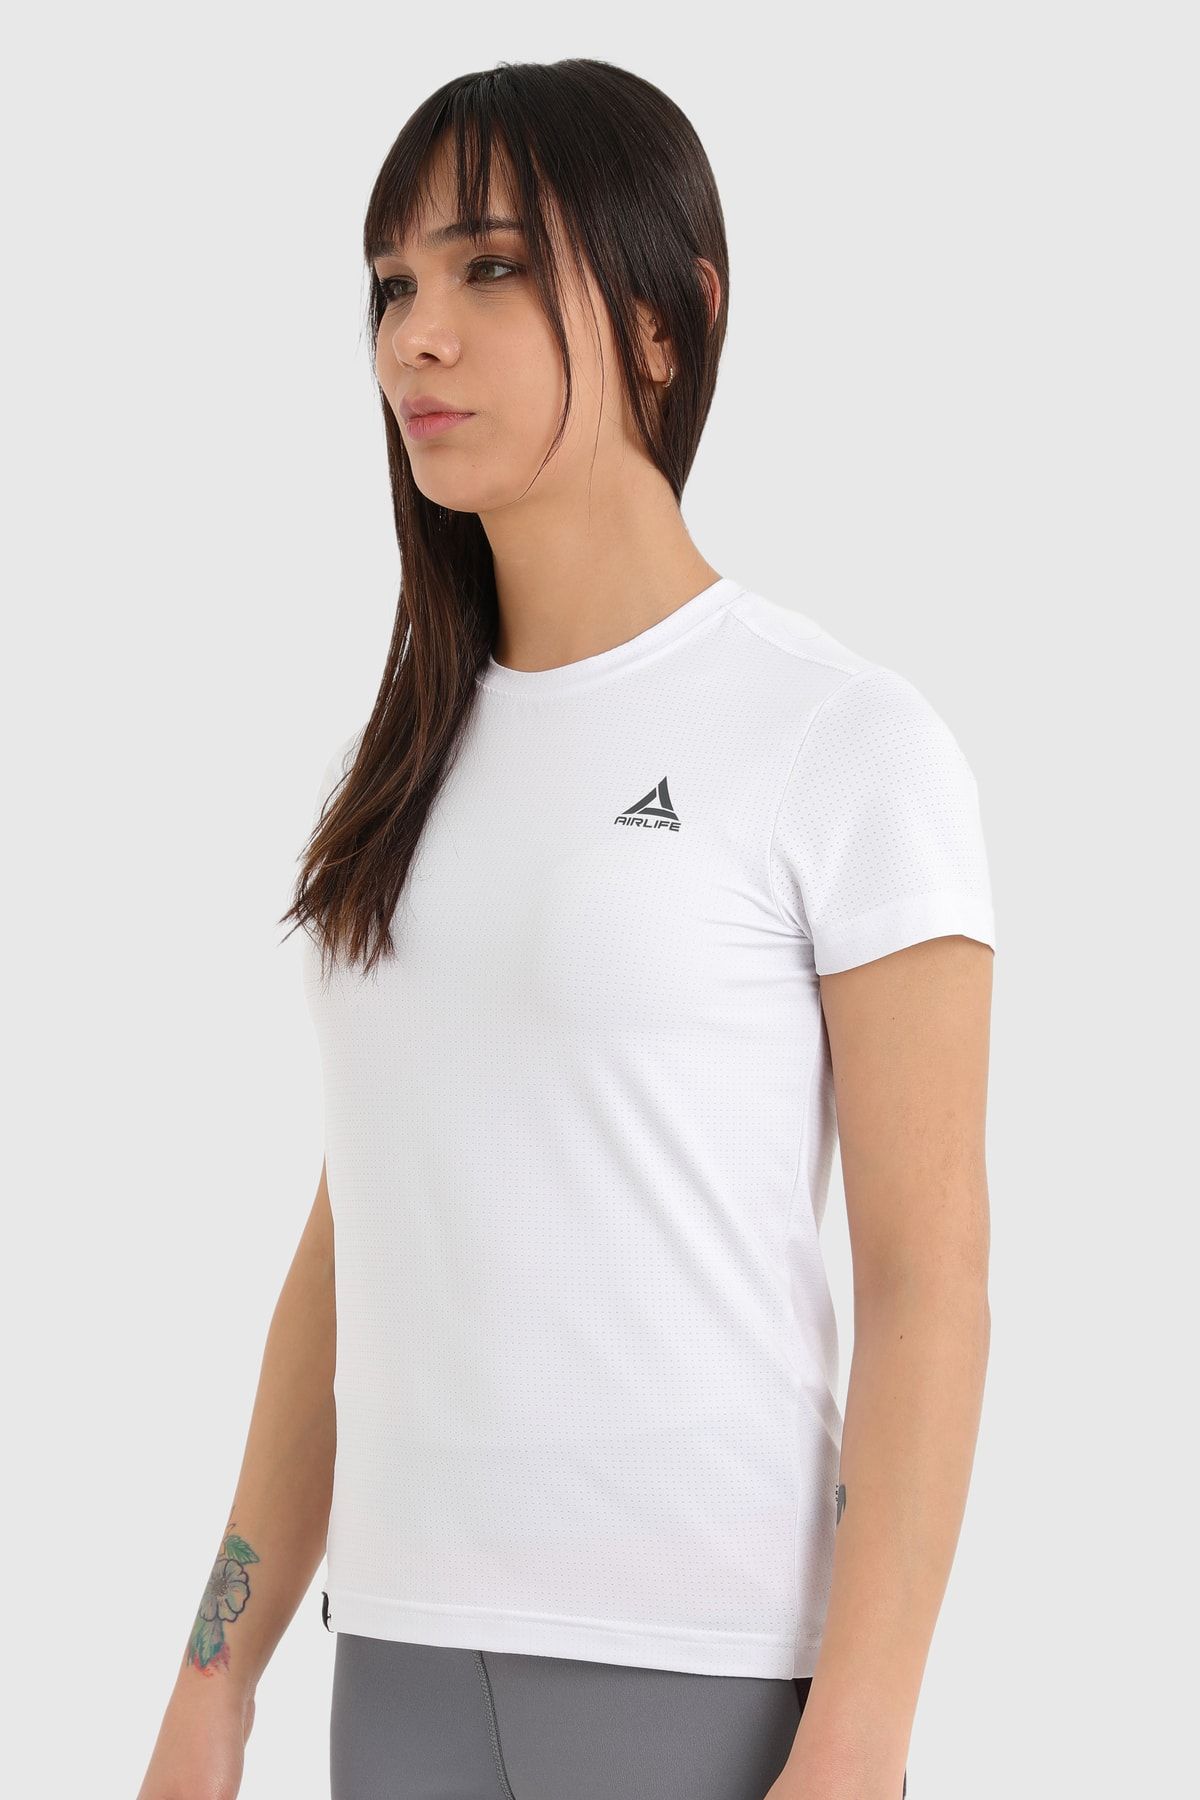 Airlife Kadın Sporcu Tişört